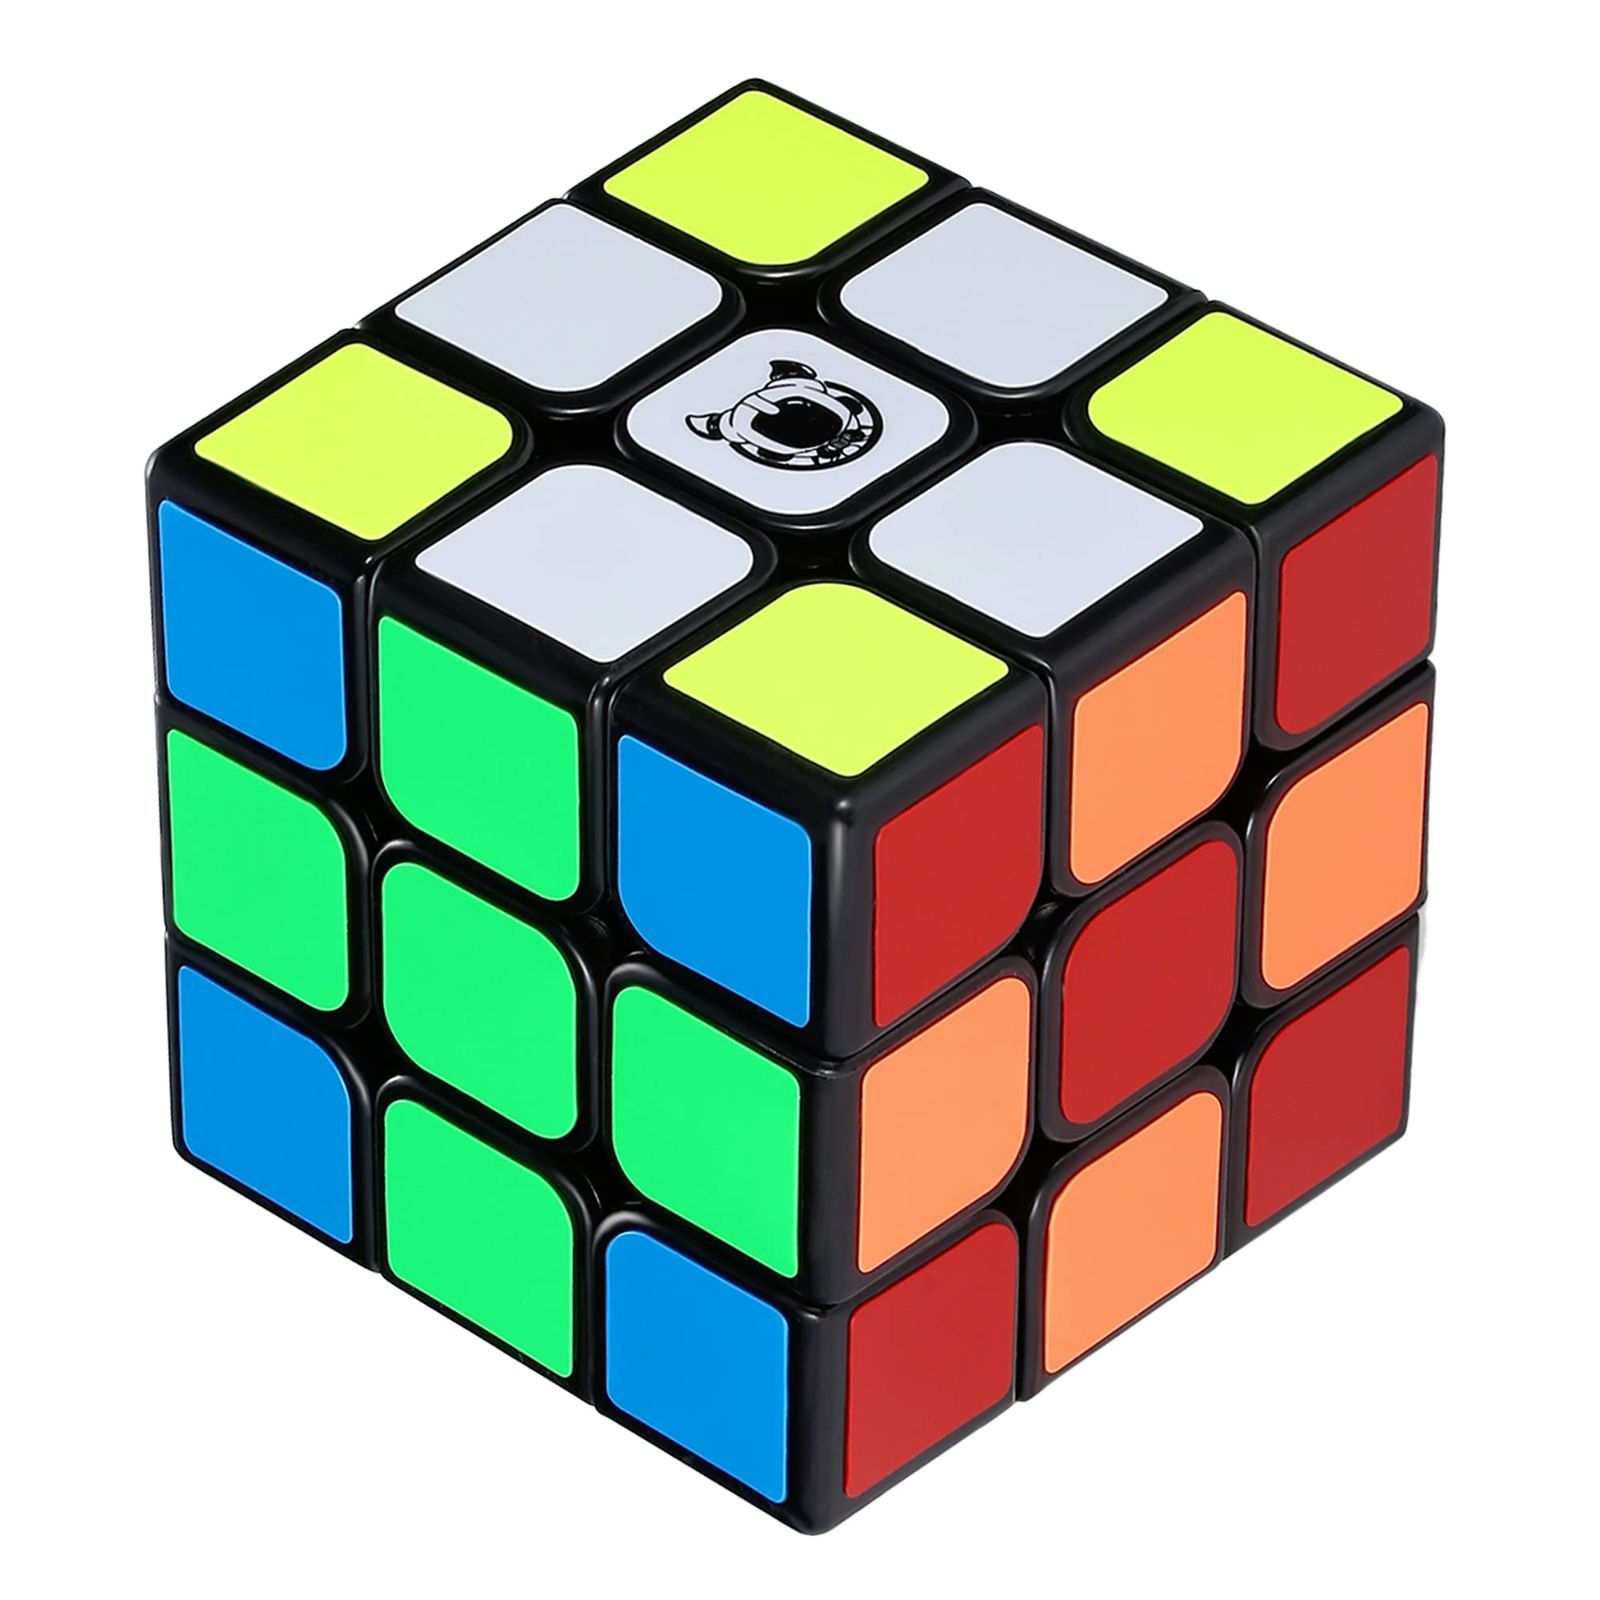 キューブ スピードキューブ 3×3×3 世界基準配色 スムーズ回転立体パズル